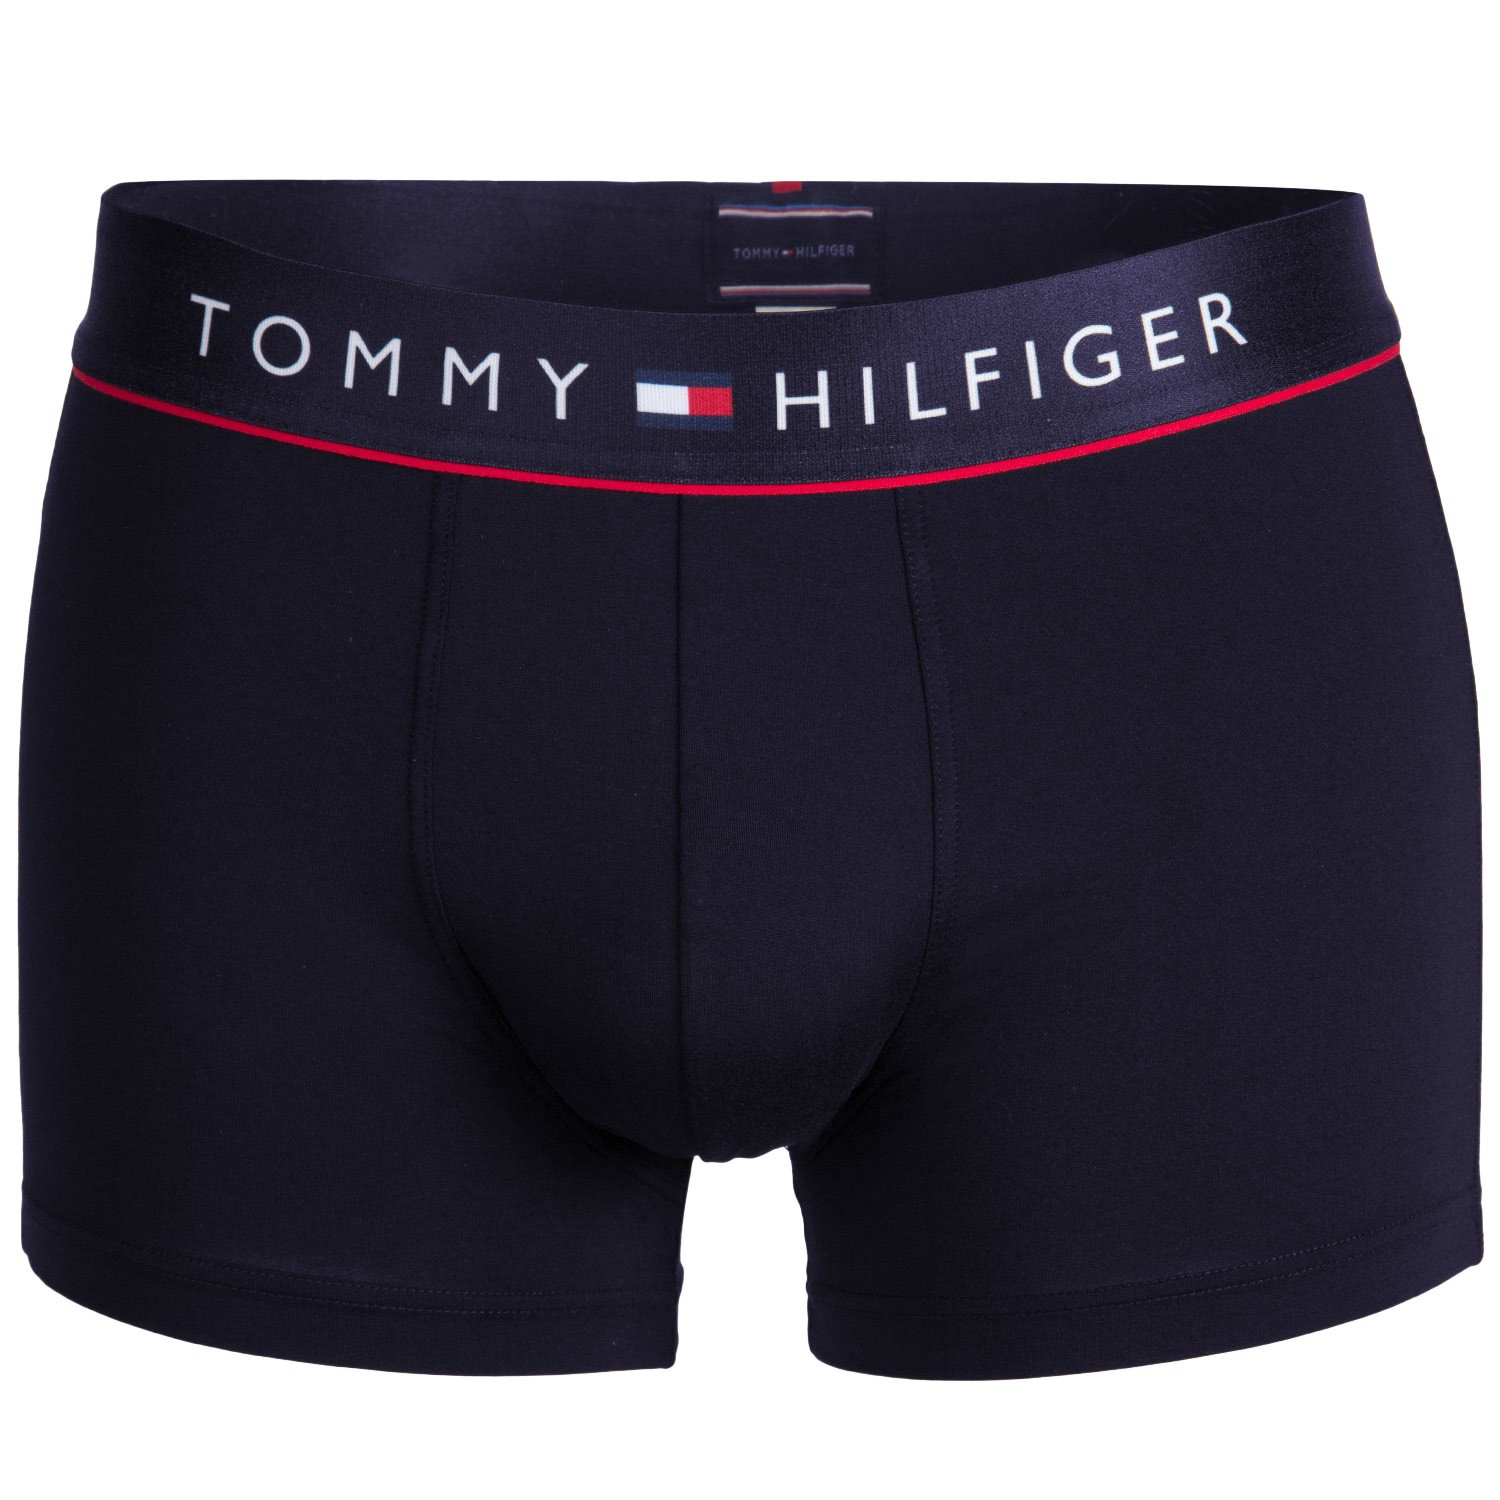 Tommy Hilfiger Cotton Flex Trunk - Boxer - Trunks - Underwear - Timarco.eu